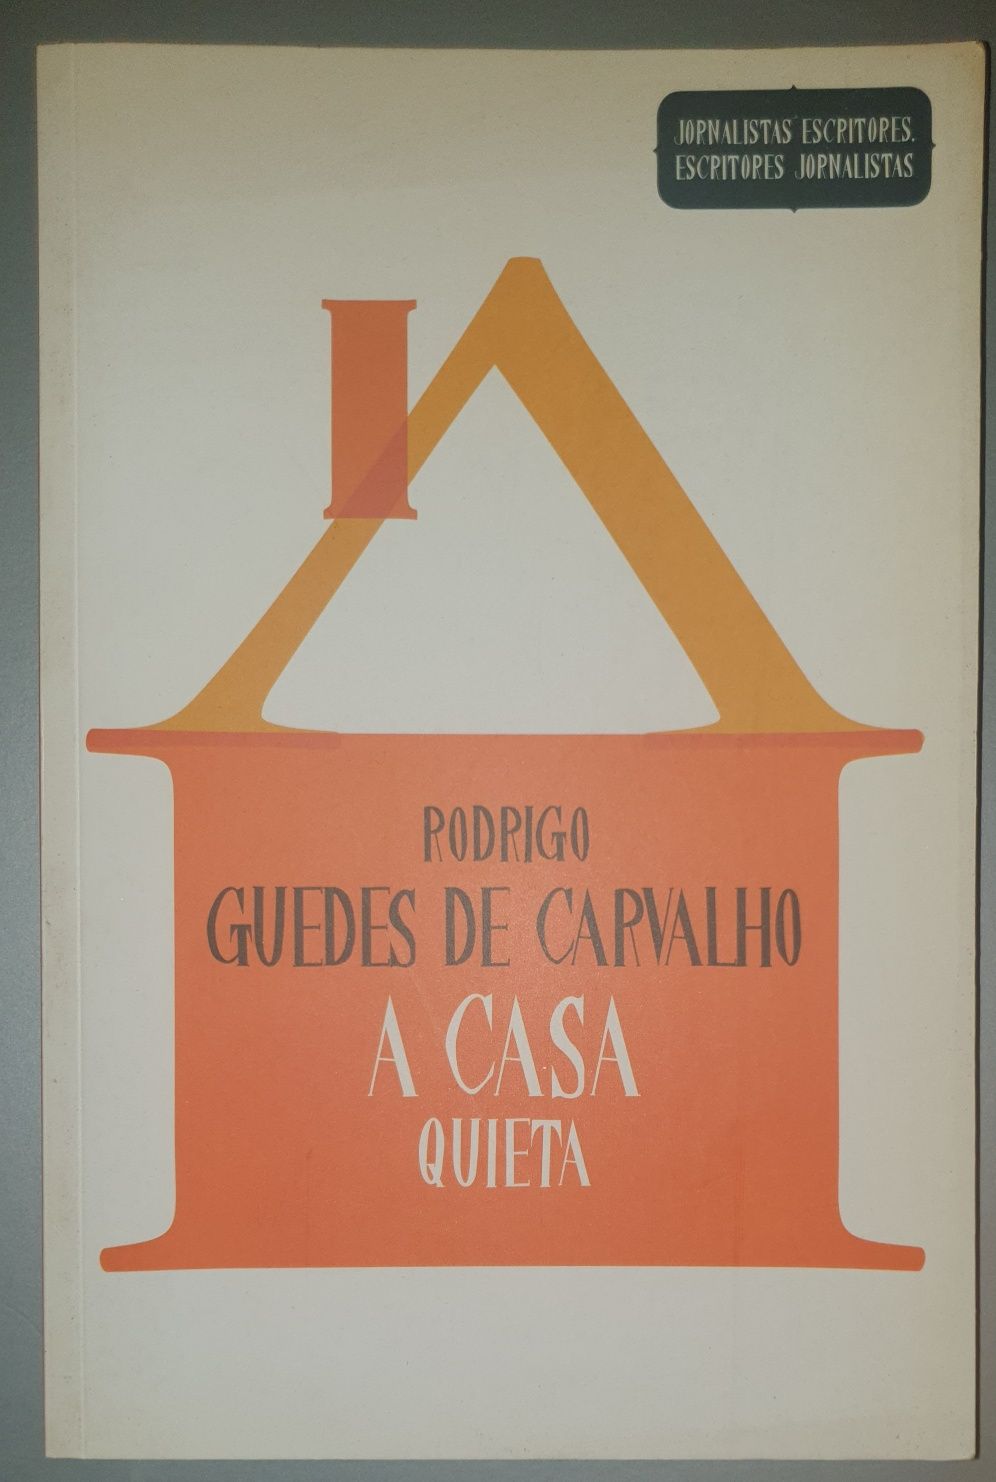 Livro  "A casa quieta" de Rodrigo Guedes de Carvalho